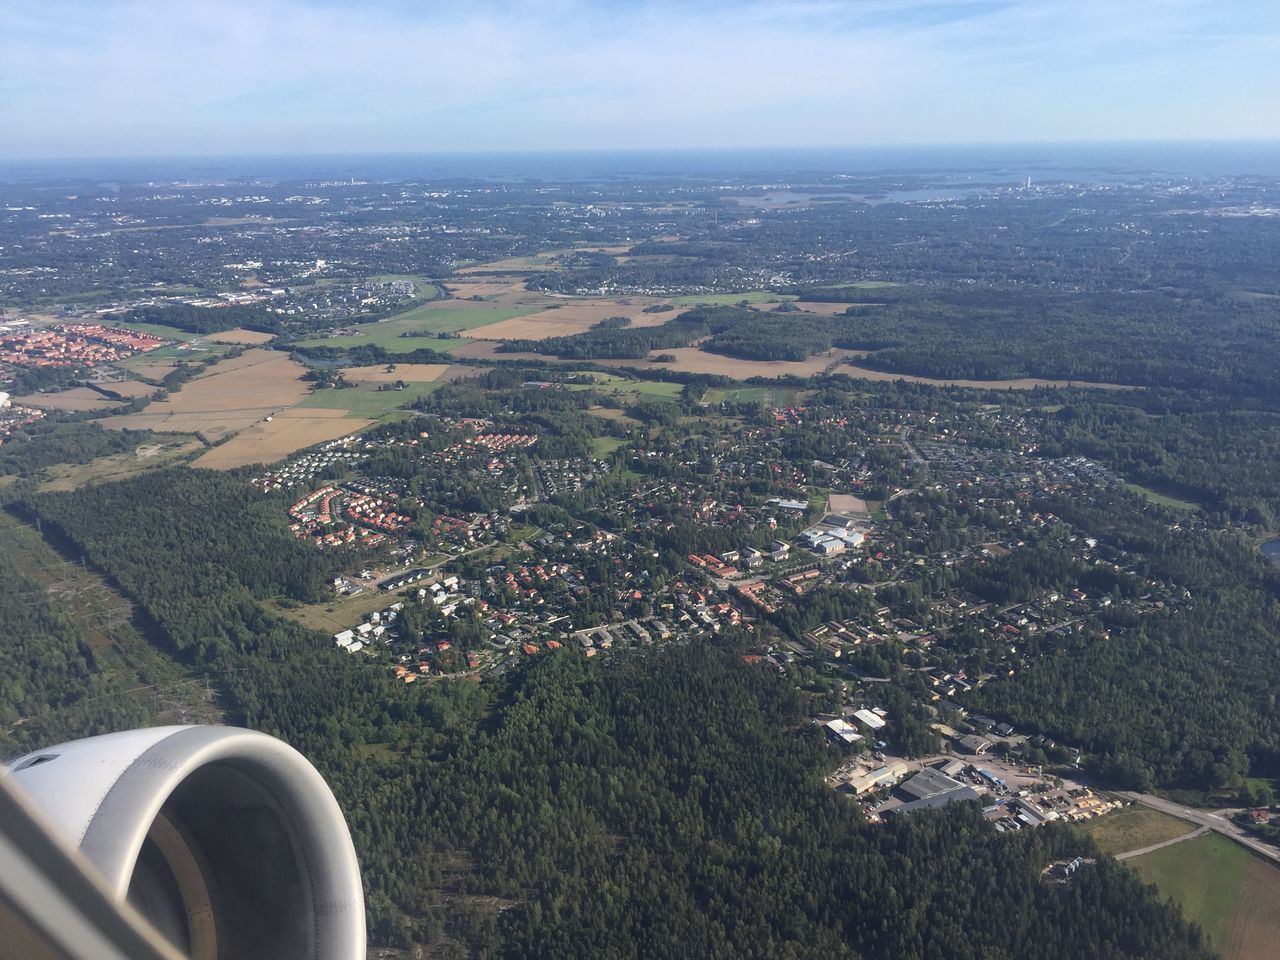 フィンランド航空ヨーロッパ線ビジネスクラスに初搭乗 一路フィンランドからイタリアへ 優雅に空を飛びたい お得な旅でダイヤ会員へ